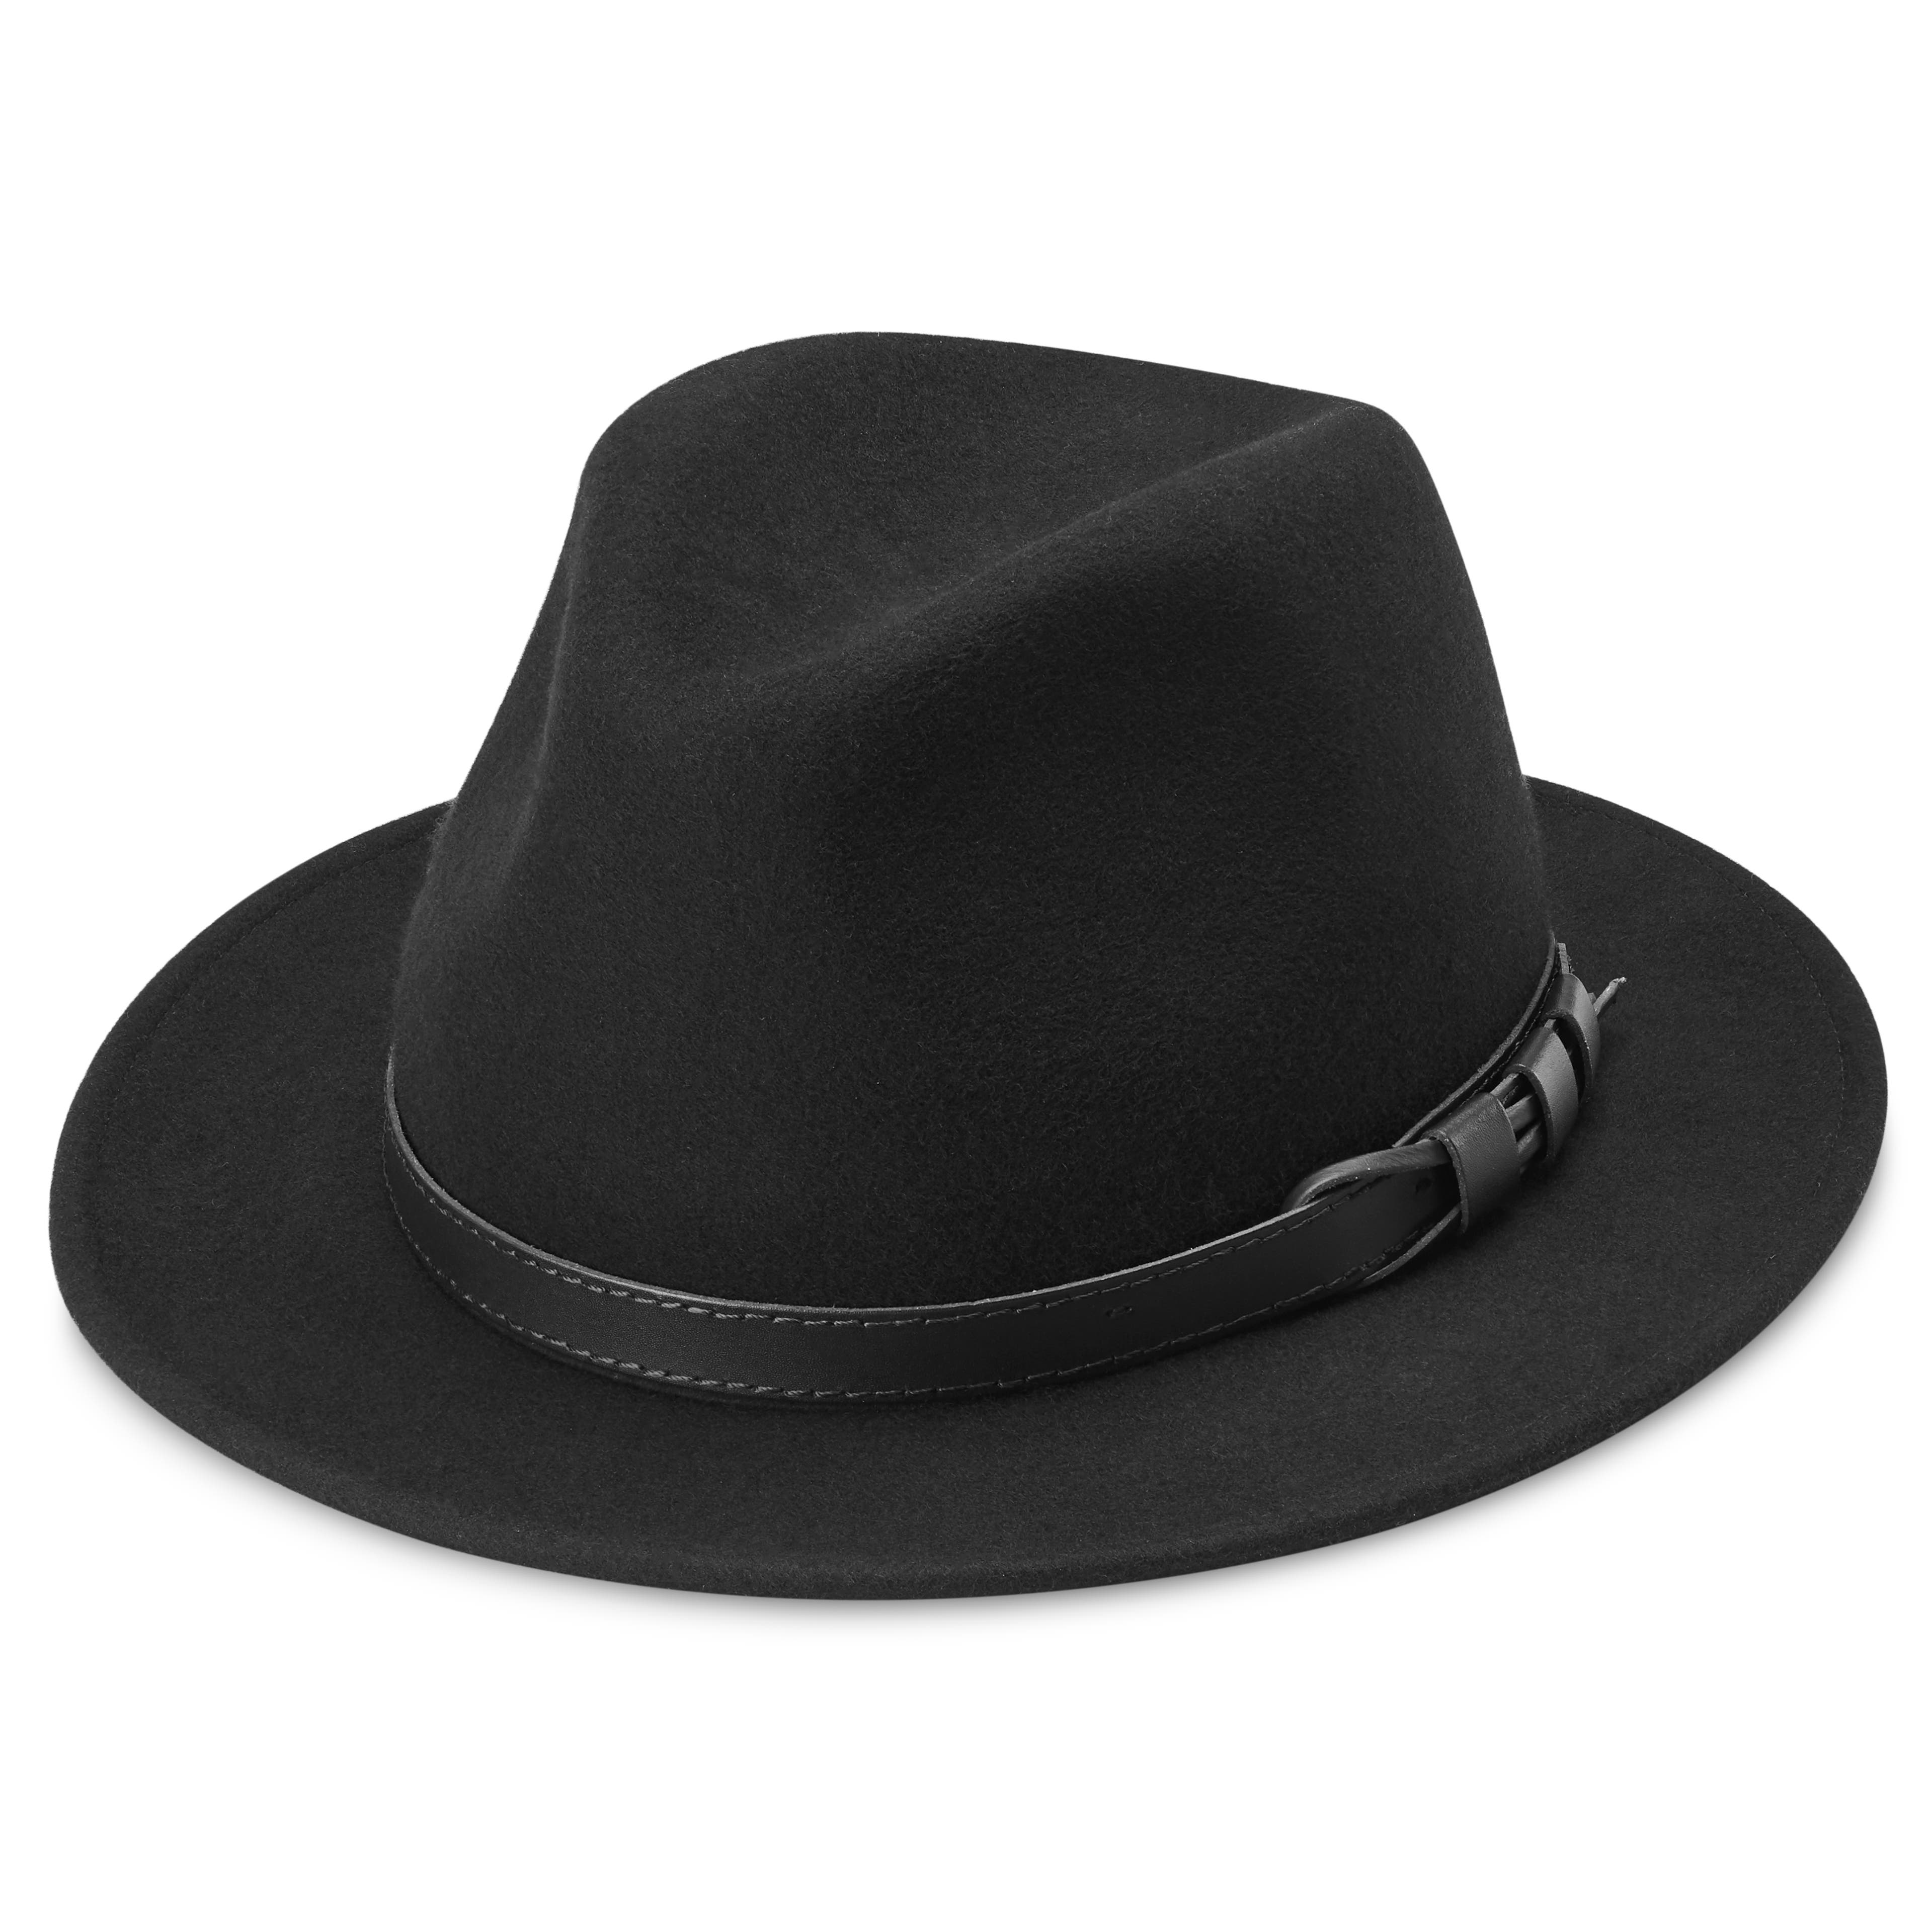 Flavio čierny vlnený fedora klobúk Moda s rovnou strieškou